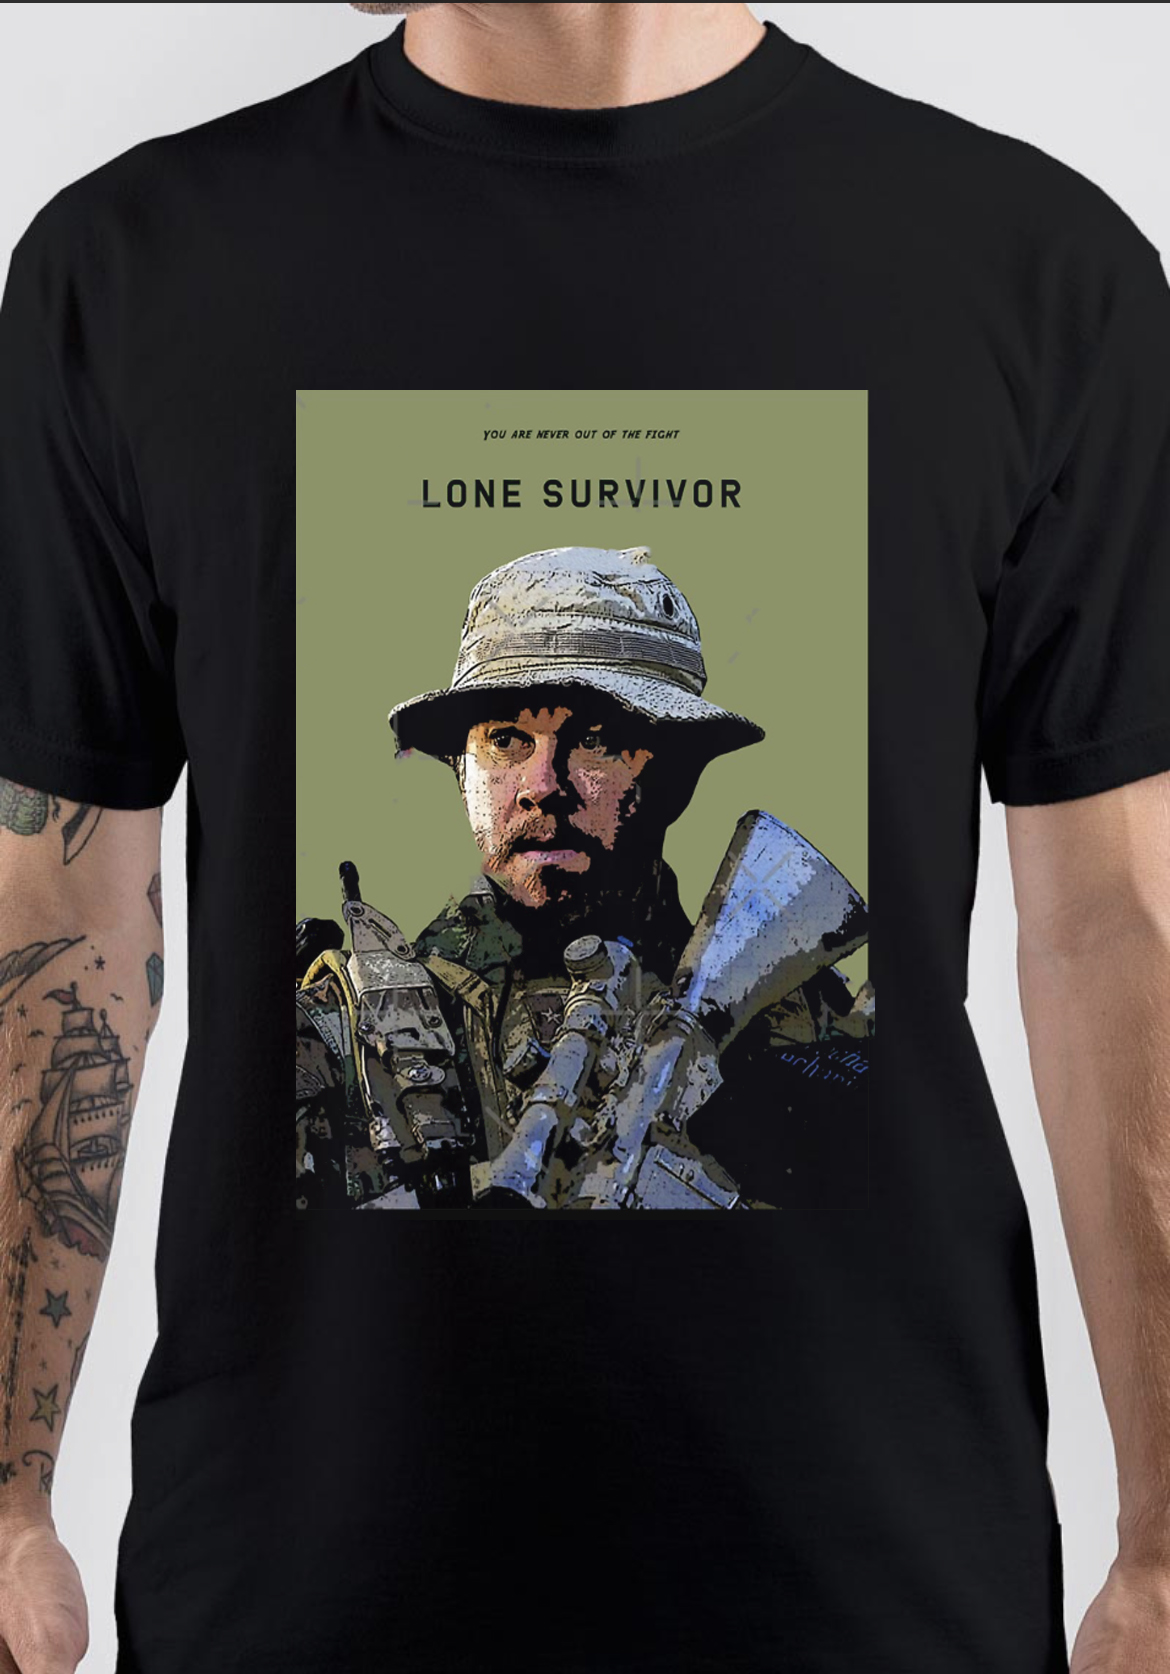 Lone Survivor